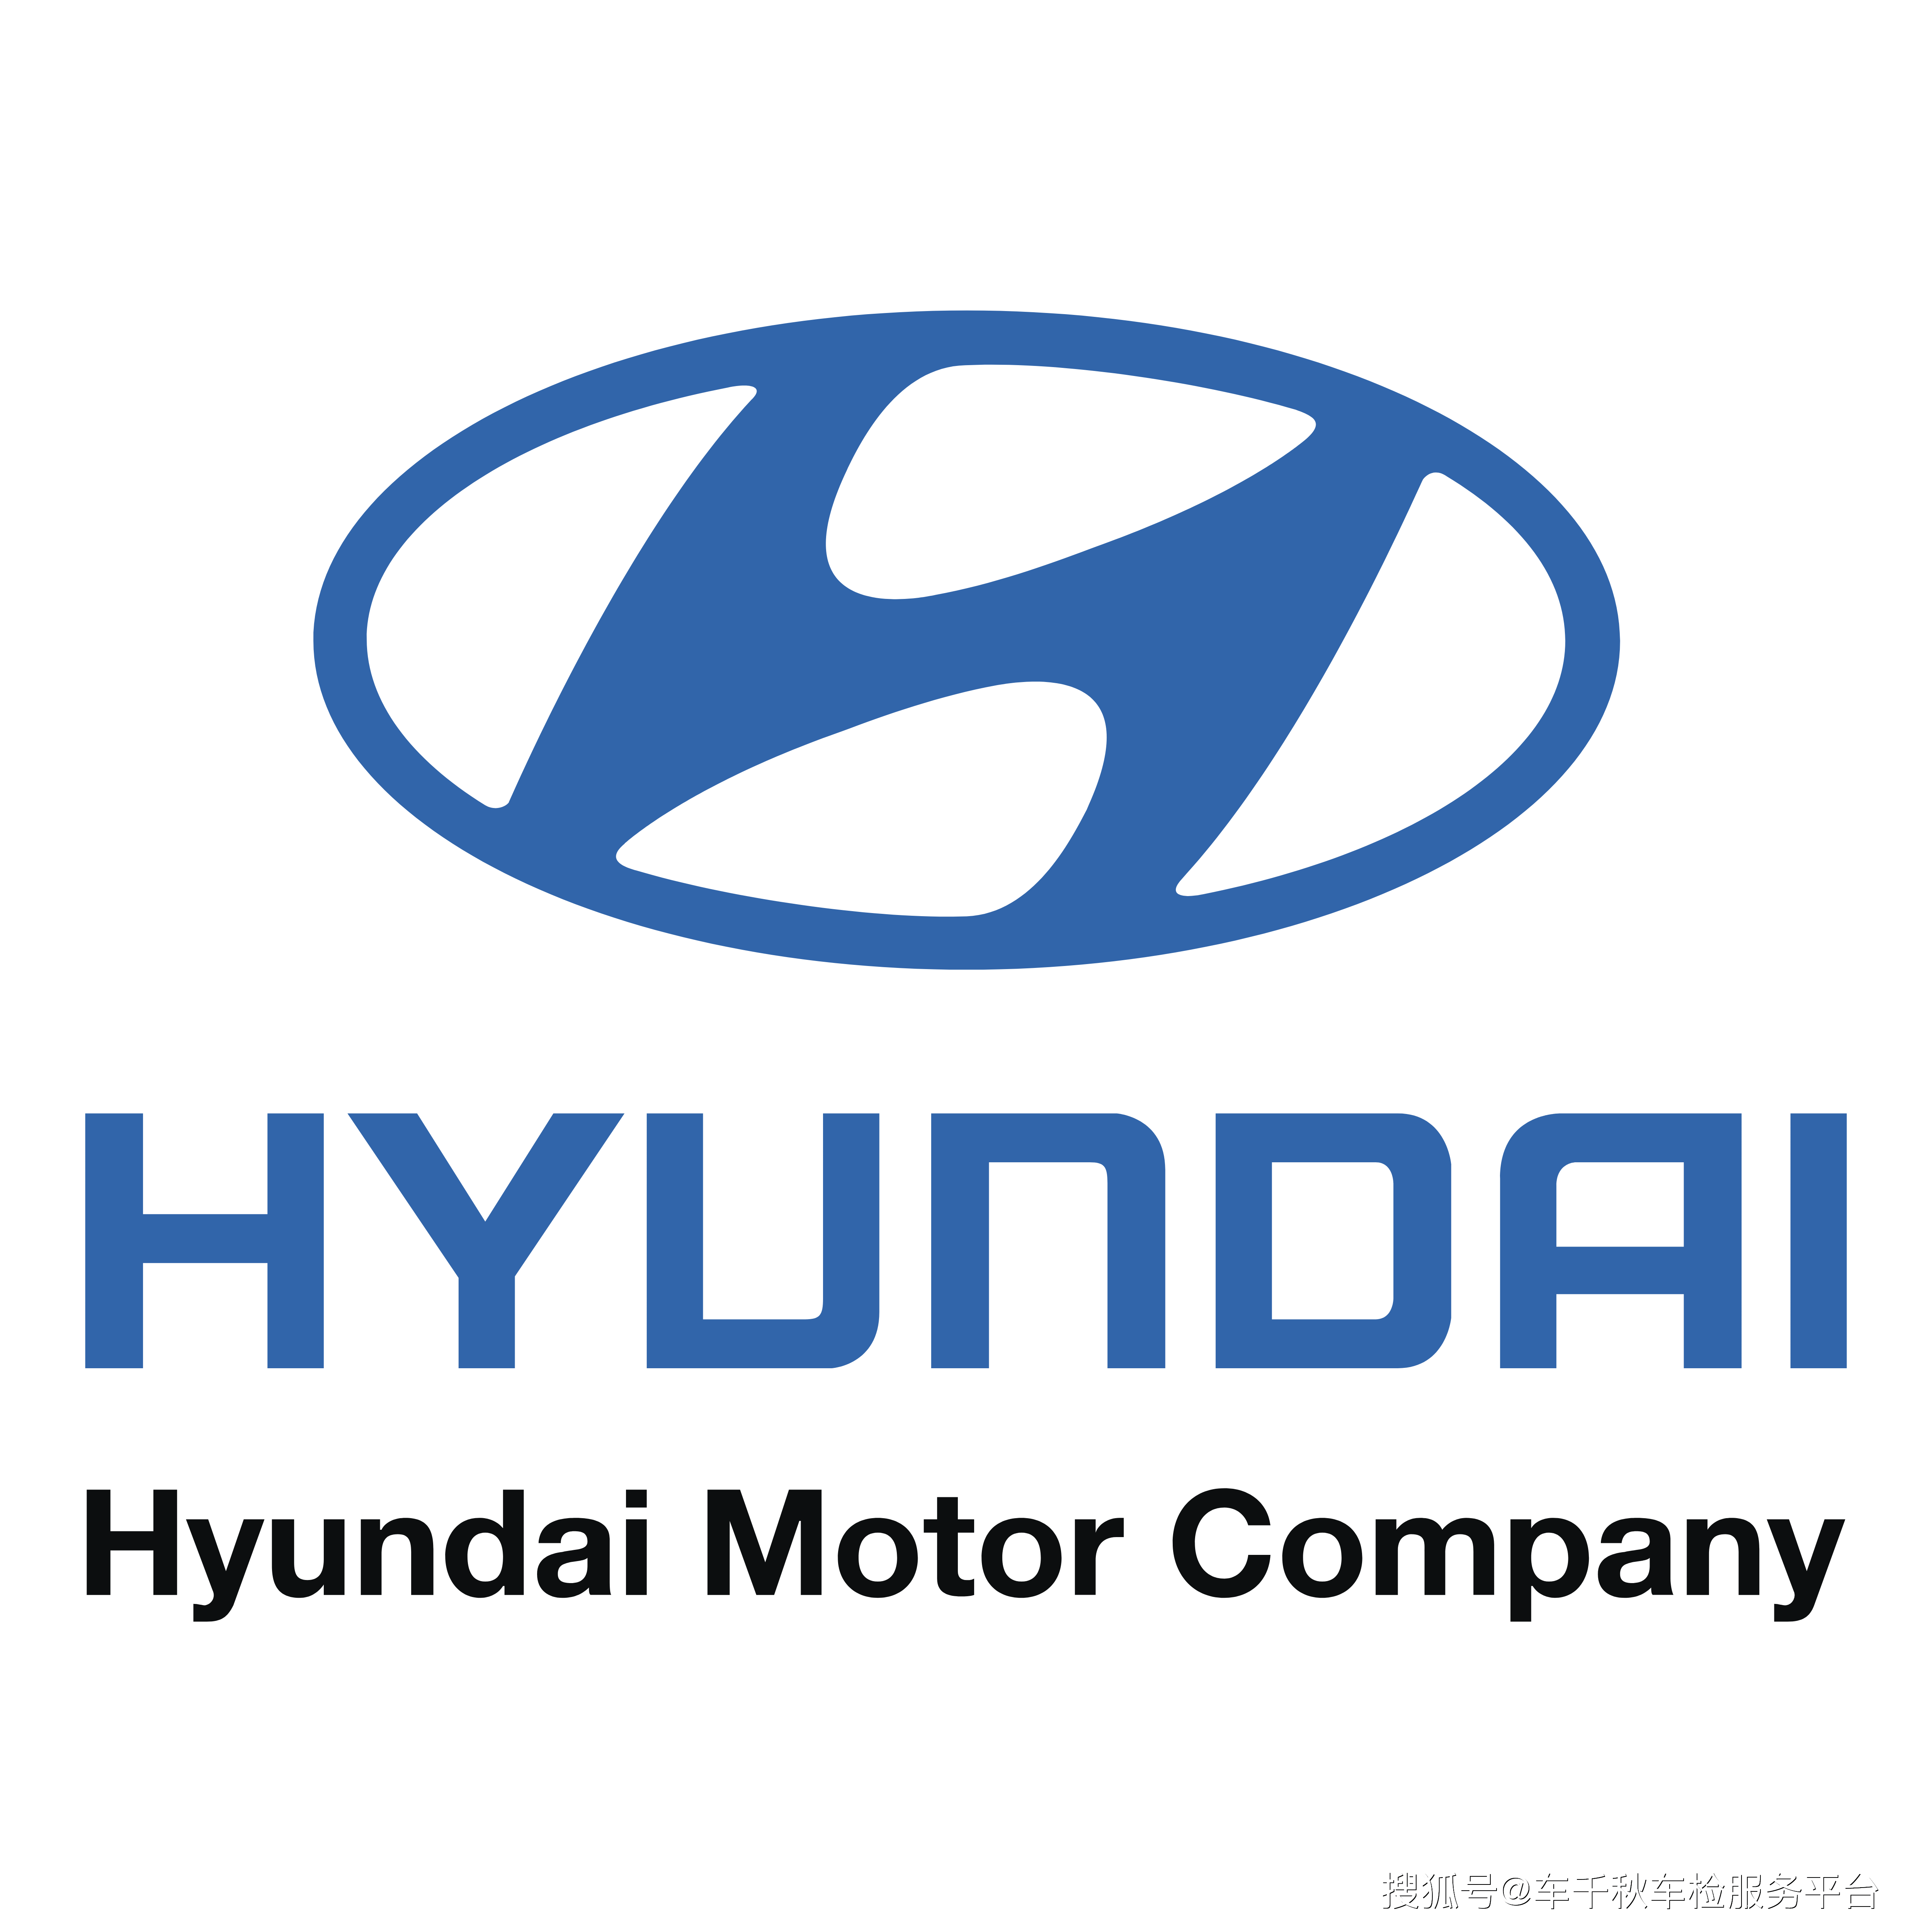 现代汽车的标志是椭圆内有斜字母h与全球其他领先的汽车公司相比